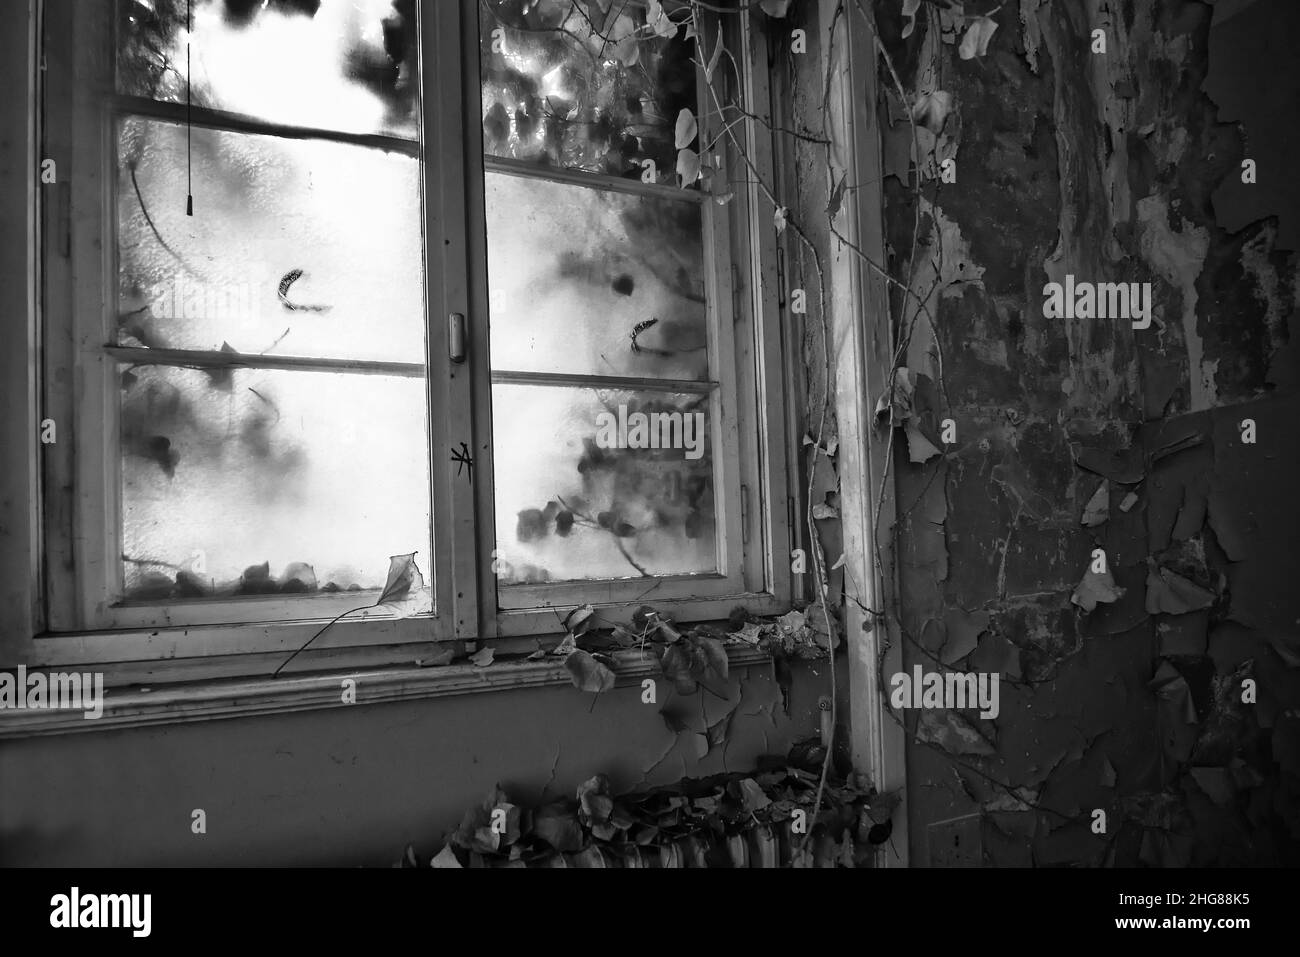 Fenster Zum Banque d'image et photos - Alamy